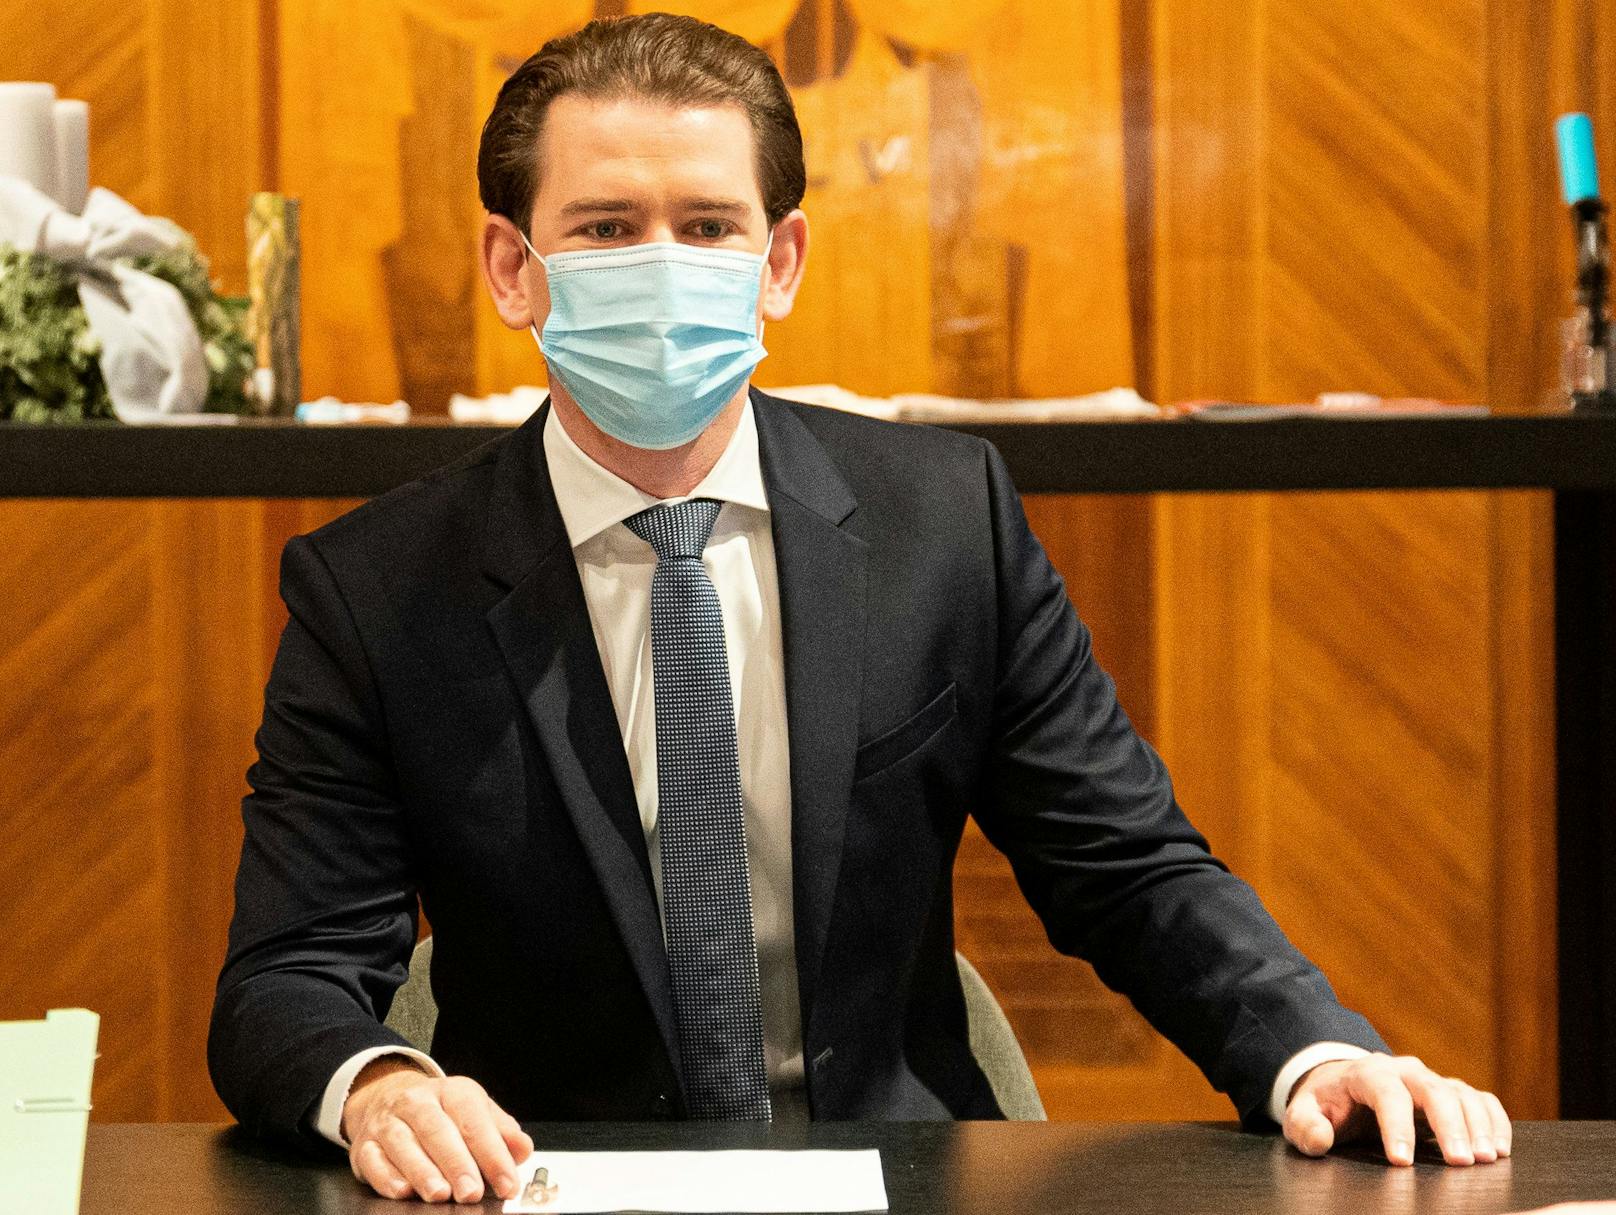 Bundeskanzler Sebastian Kurz will sich "ganz bestimmt impfen" lassen.